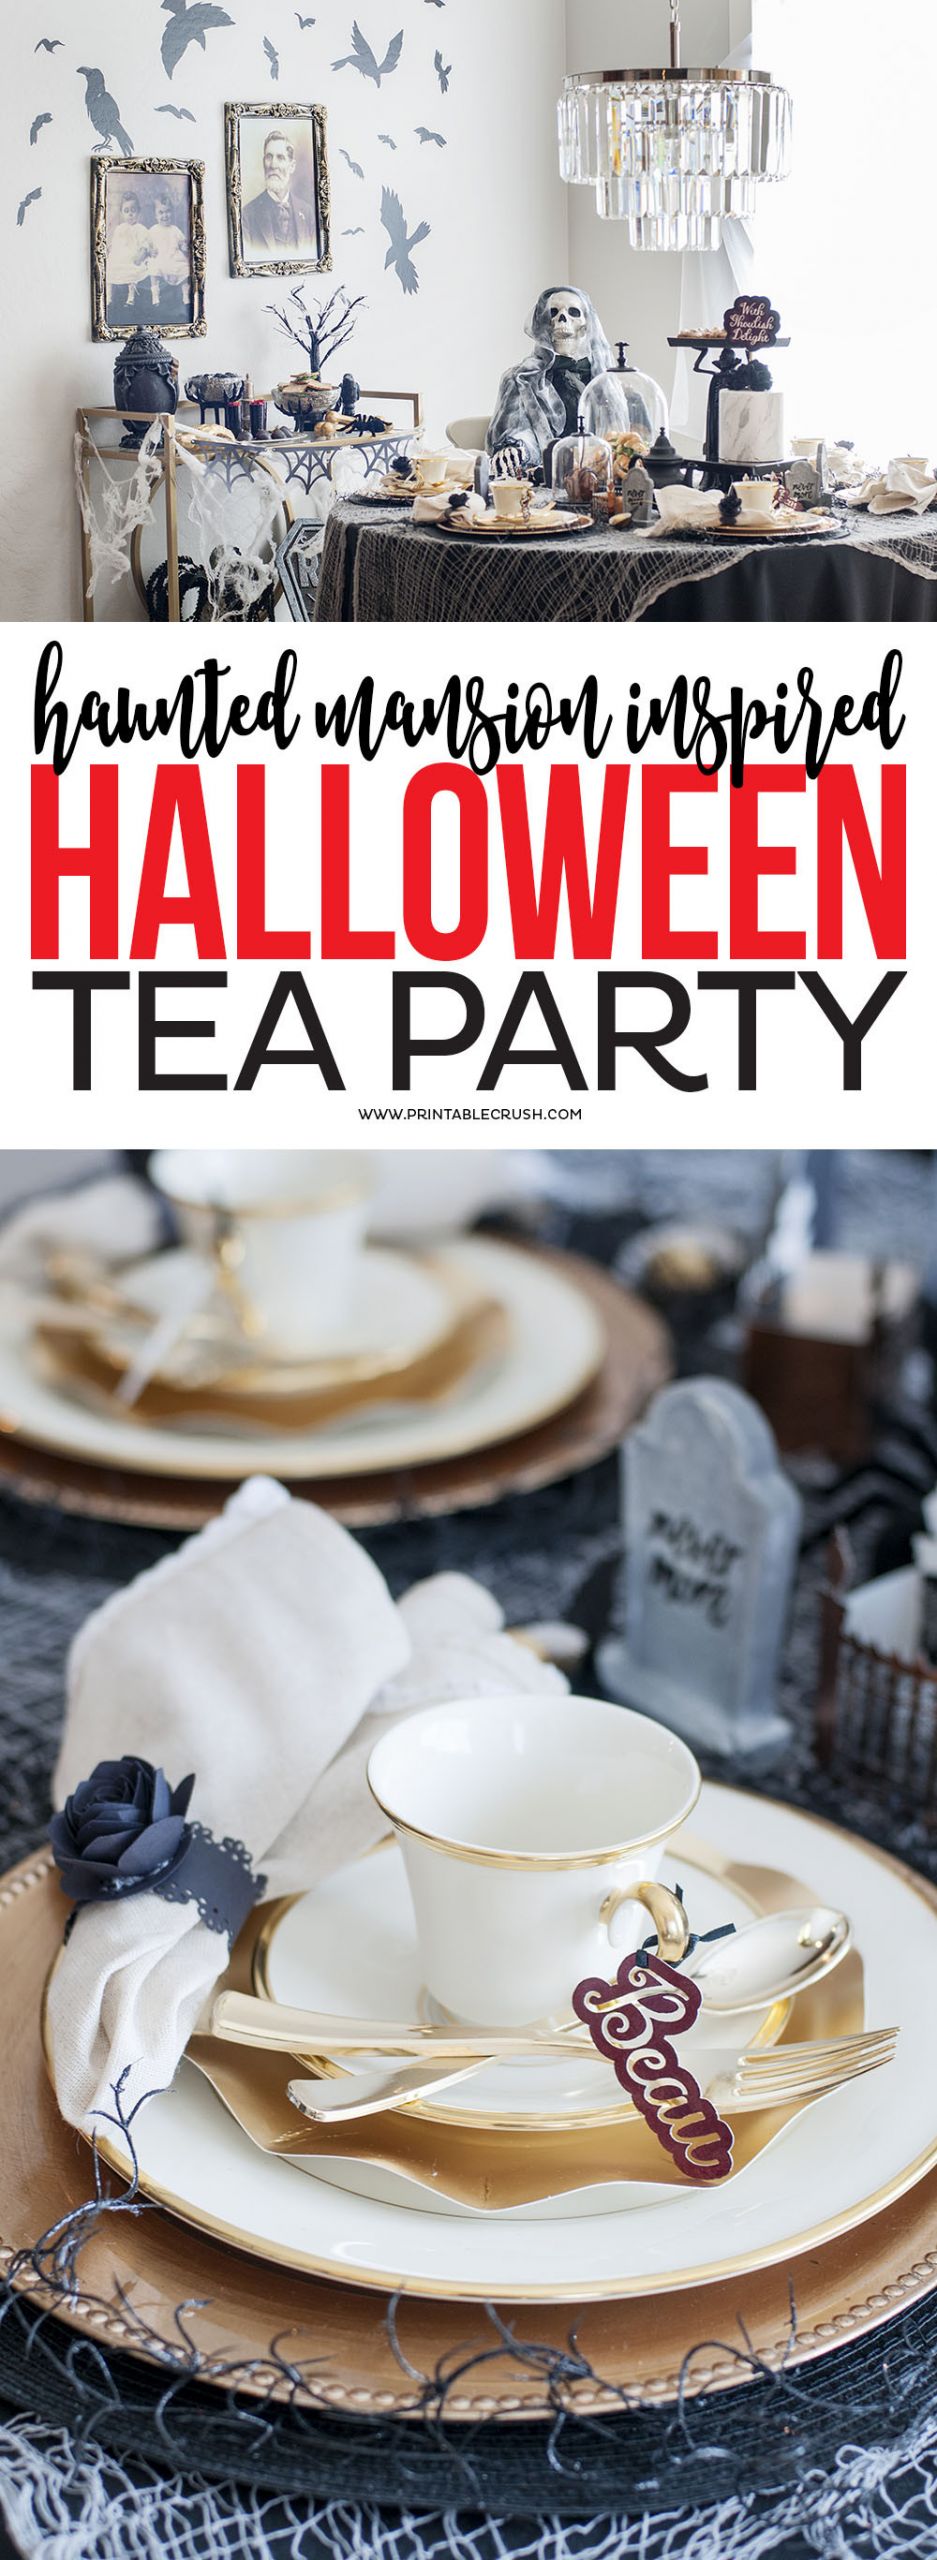 Halloween Tea Party Ideas
 Haunted Mansion Halloween Tea Party Ideas Printable Crush